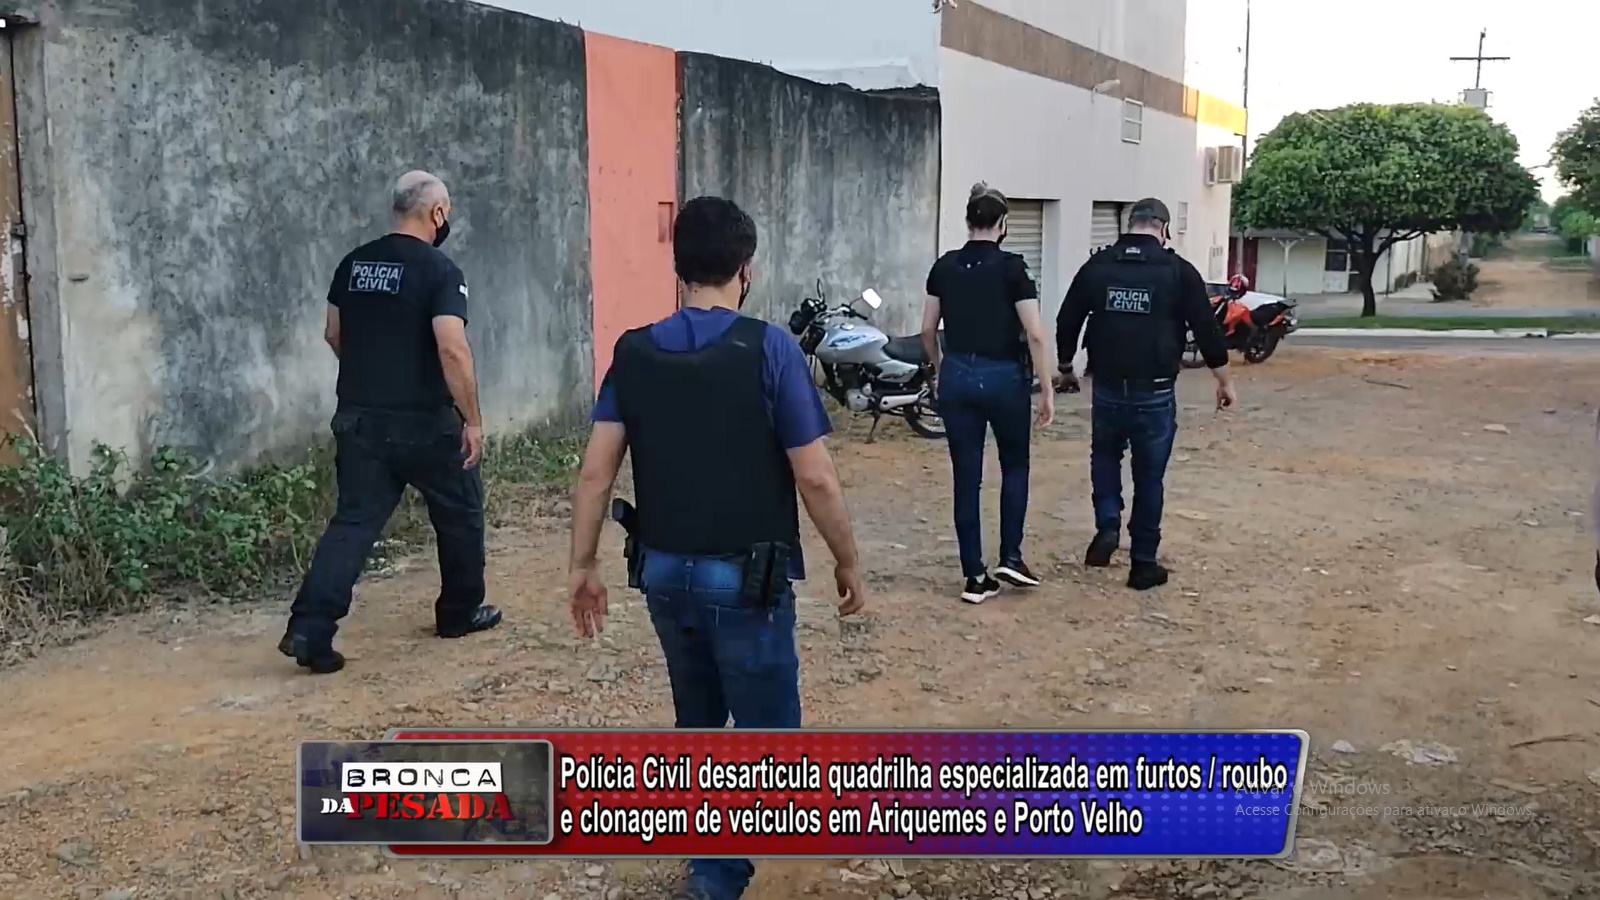 Polícia Civil desarticula quadrilha especializada em furtos / roubo e clonagem de veículos em Ariquemes e PVH